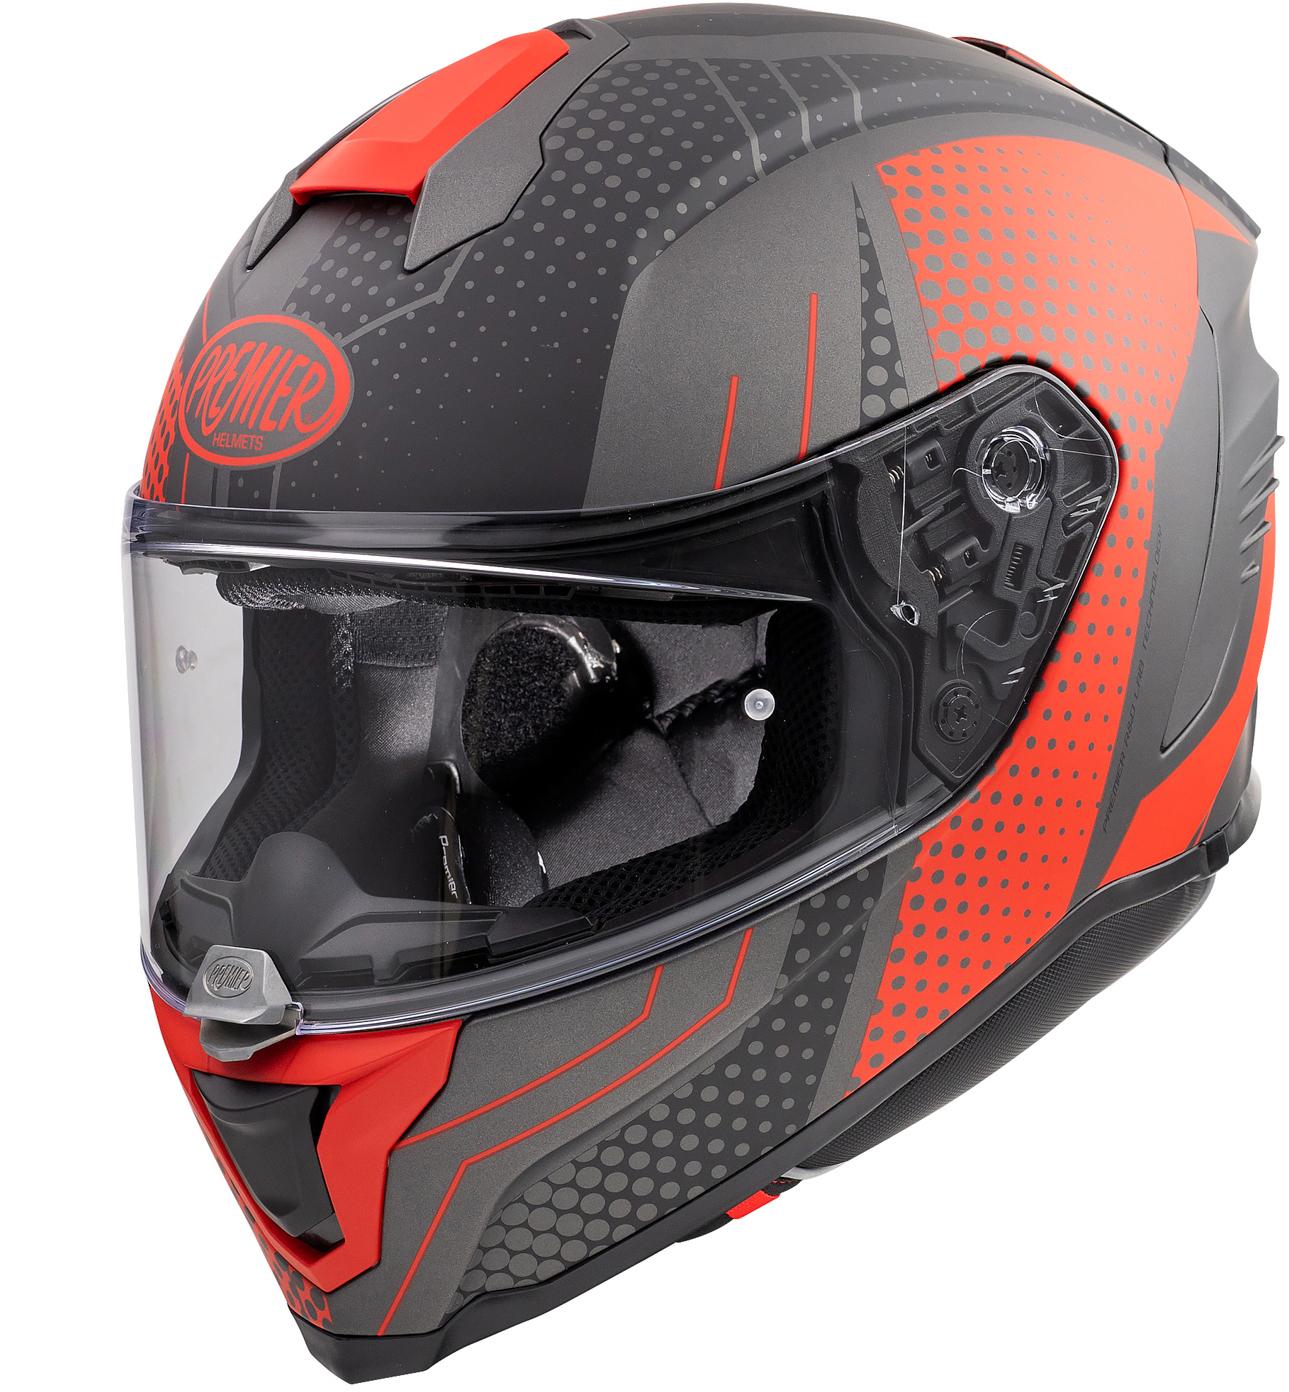 Premier Hyper Bp Full Face Motorcycle Helmet - Black/Red, S